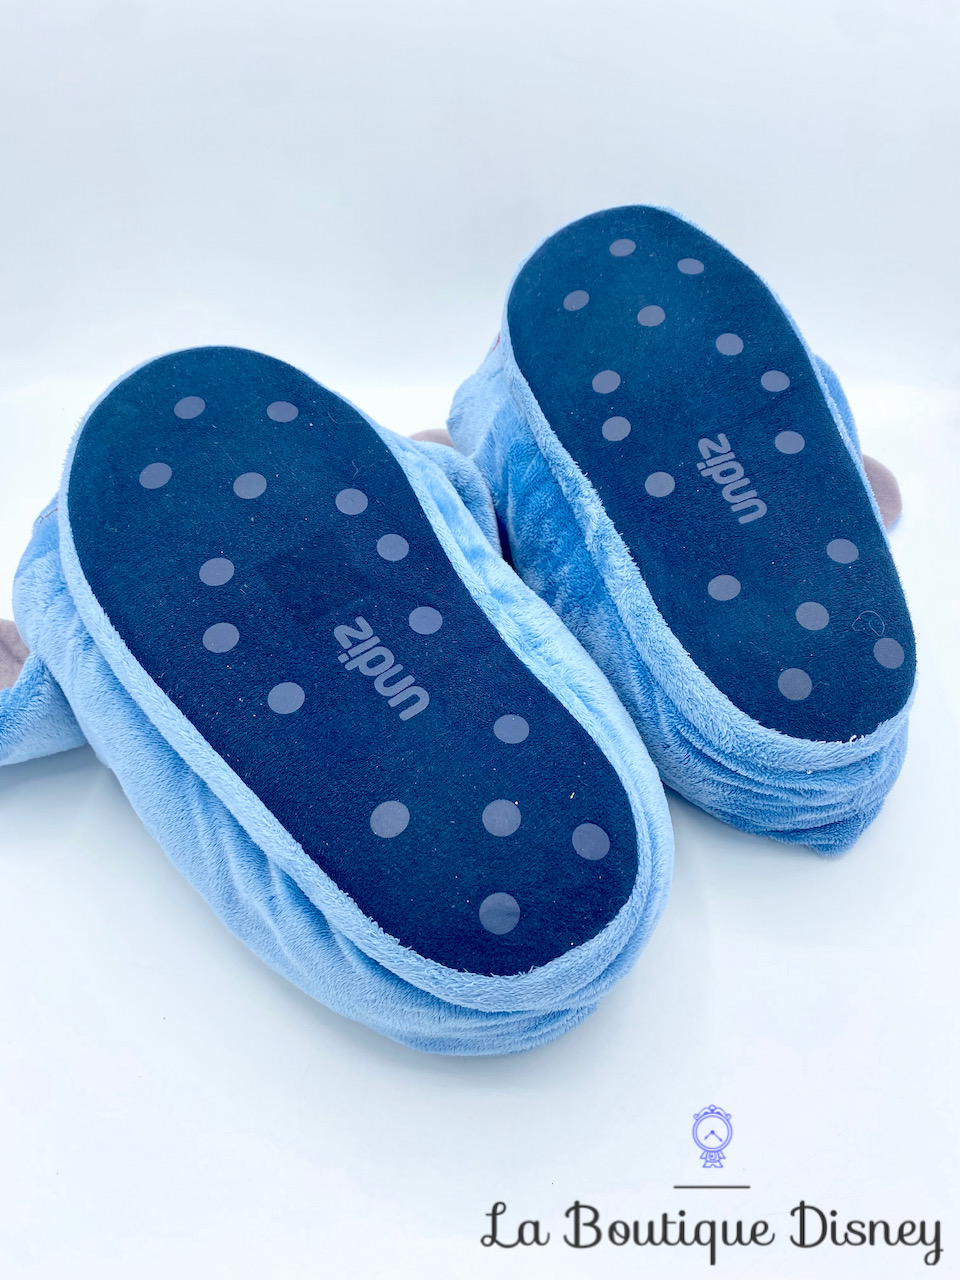 Chaussons Stitch Disney Undiz pantoufles relief peluche bleu